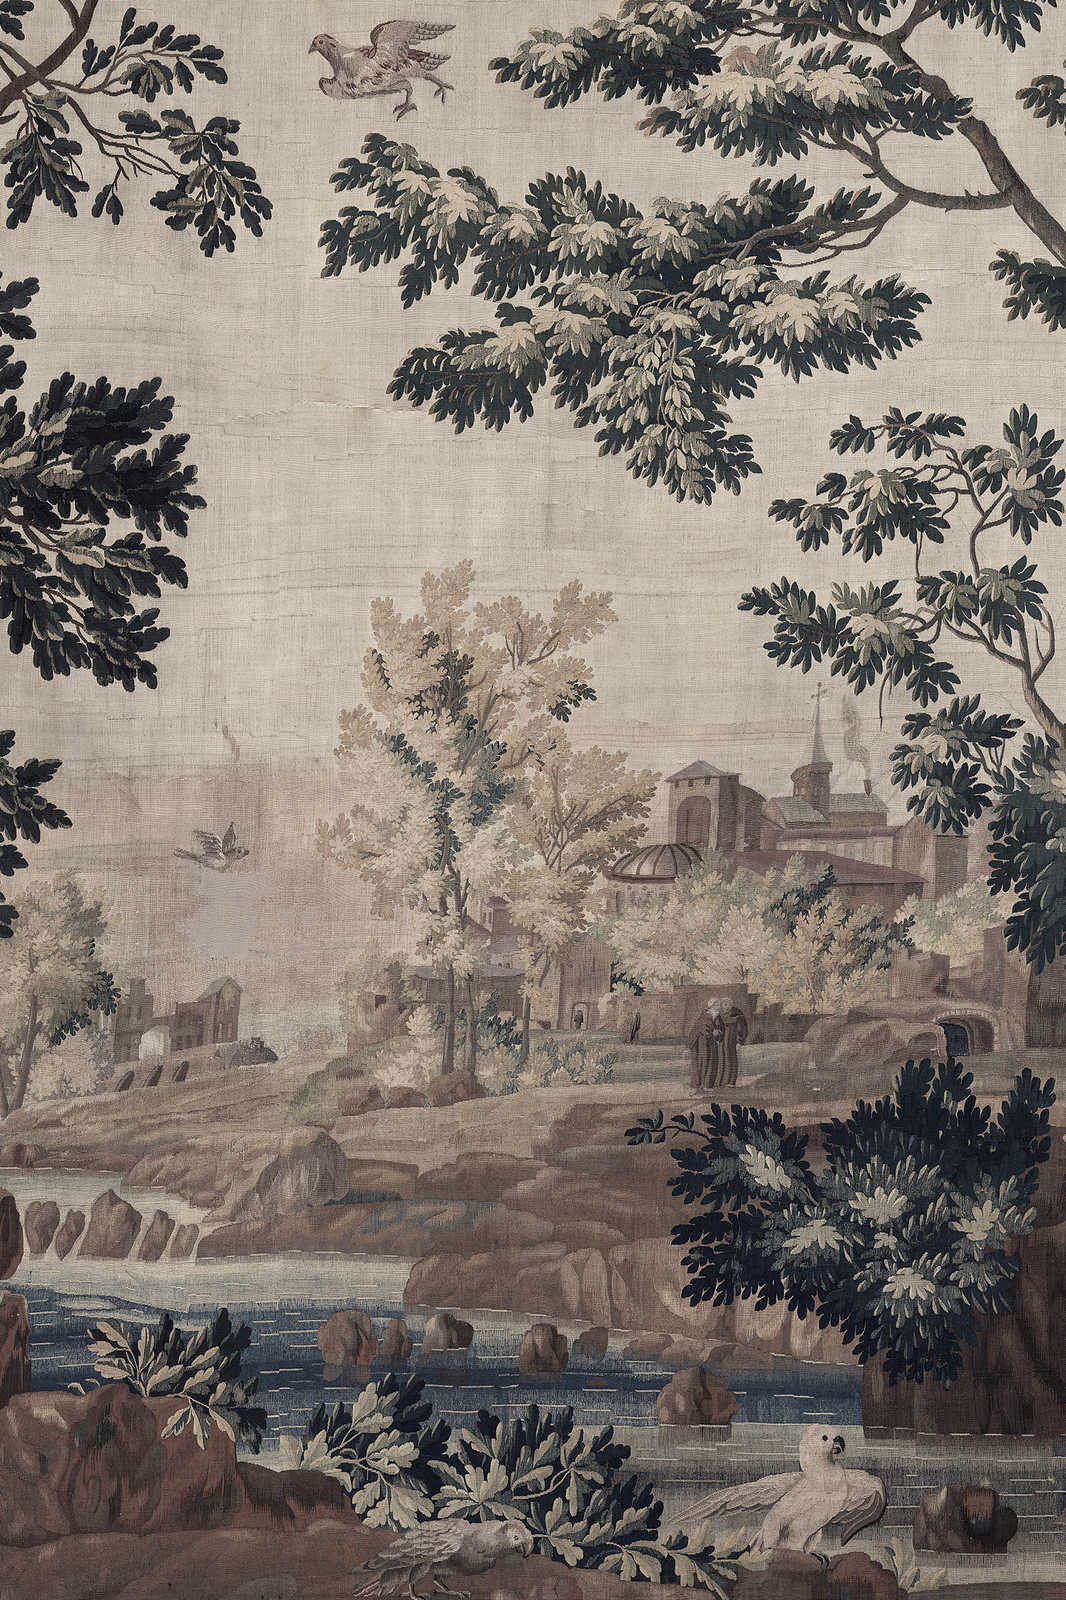             Gobelin Gallery 1 - Cuadro lienzo paisaje tapiz histórico - 1,20 m x 0,80 m
        